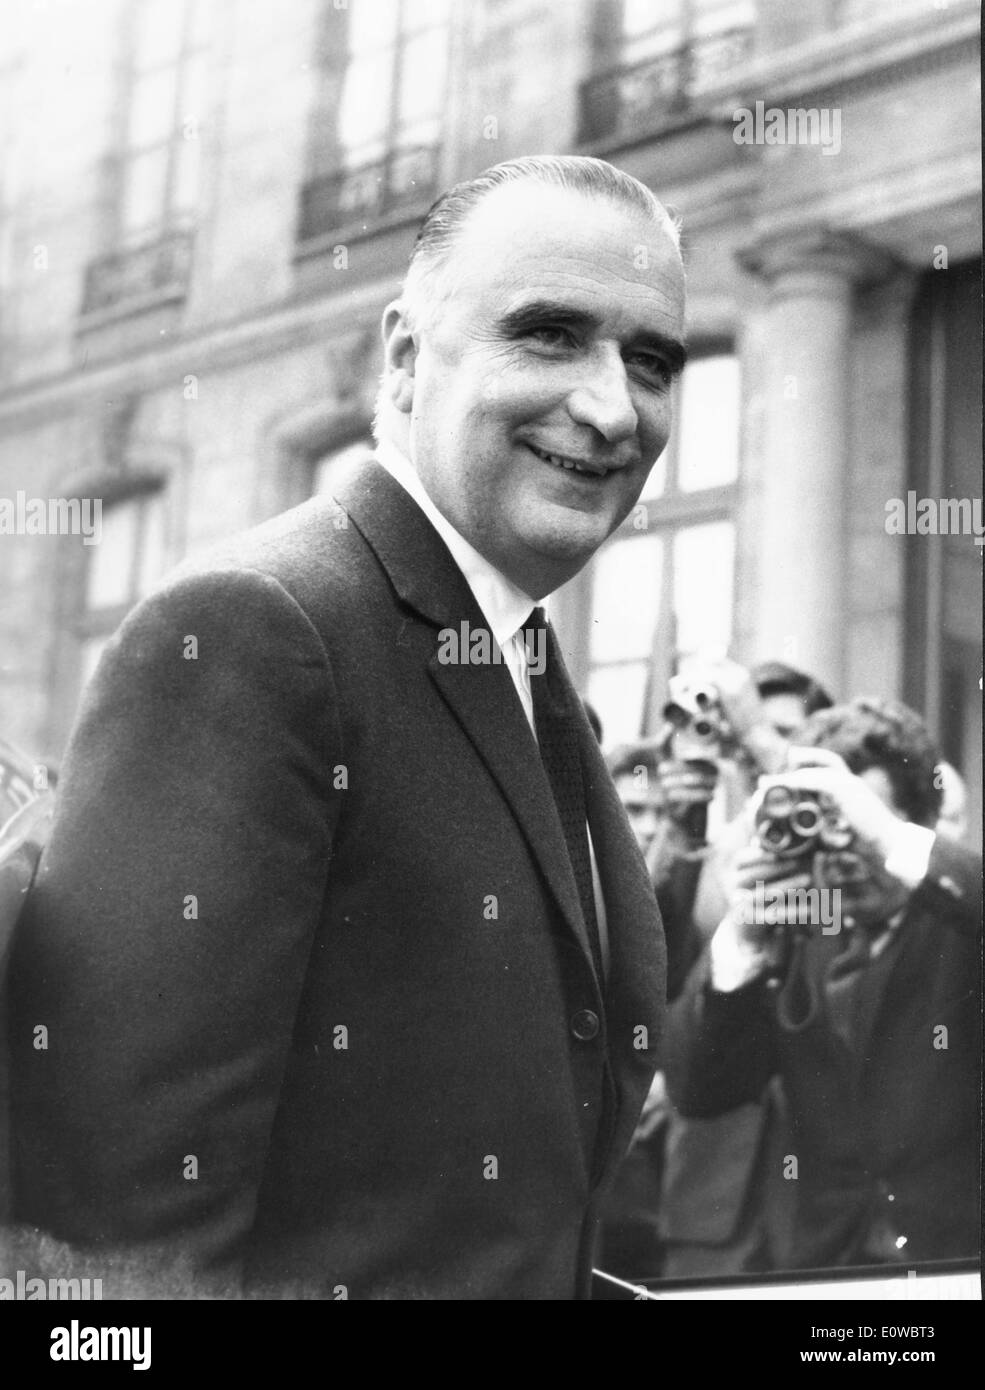 Le président Georges Pompidou arrive au Palais de l'Élysée Banque D'Images